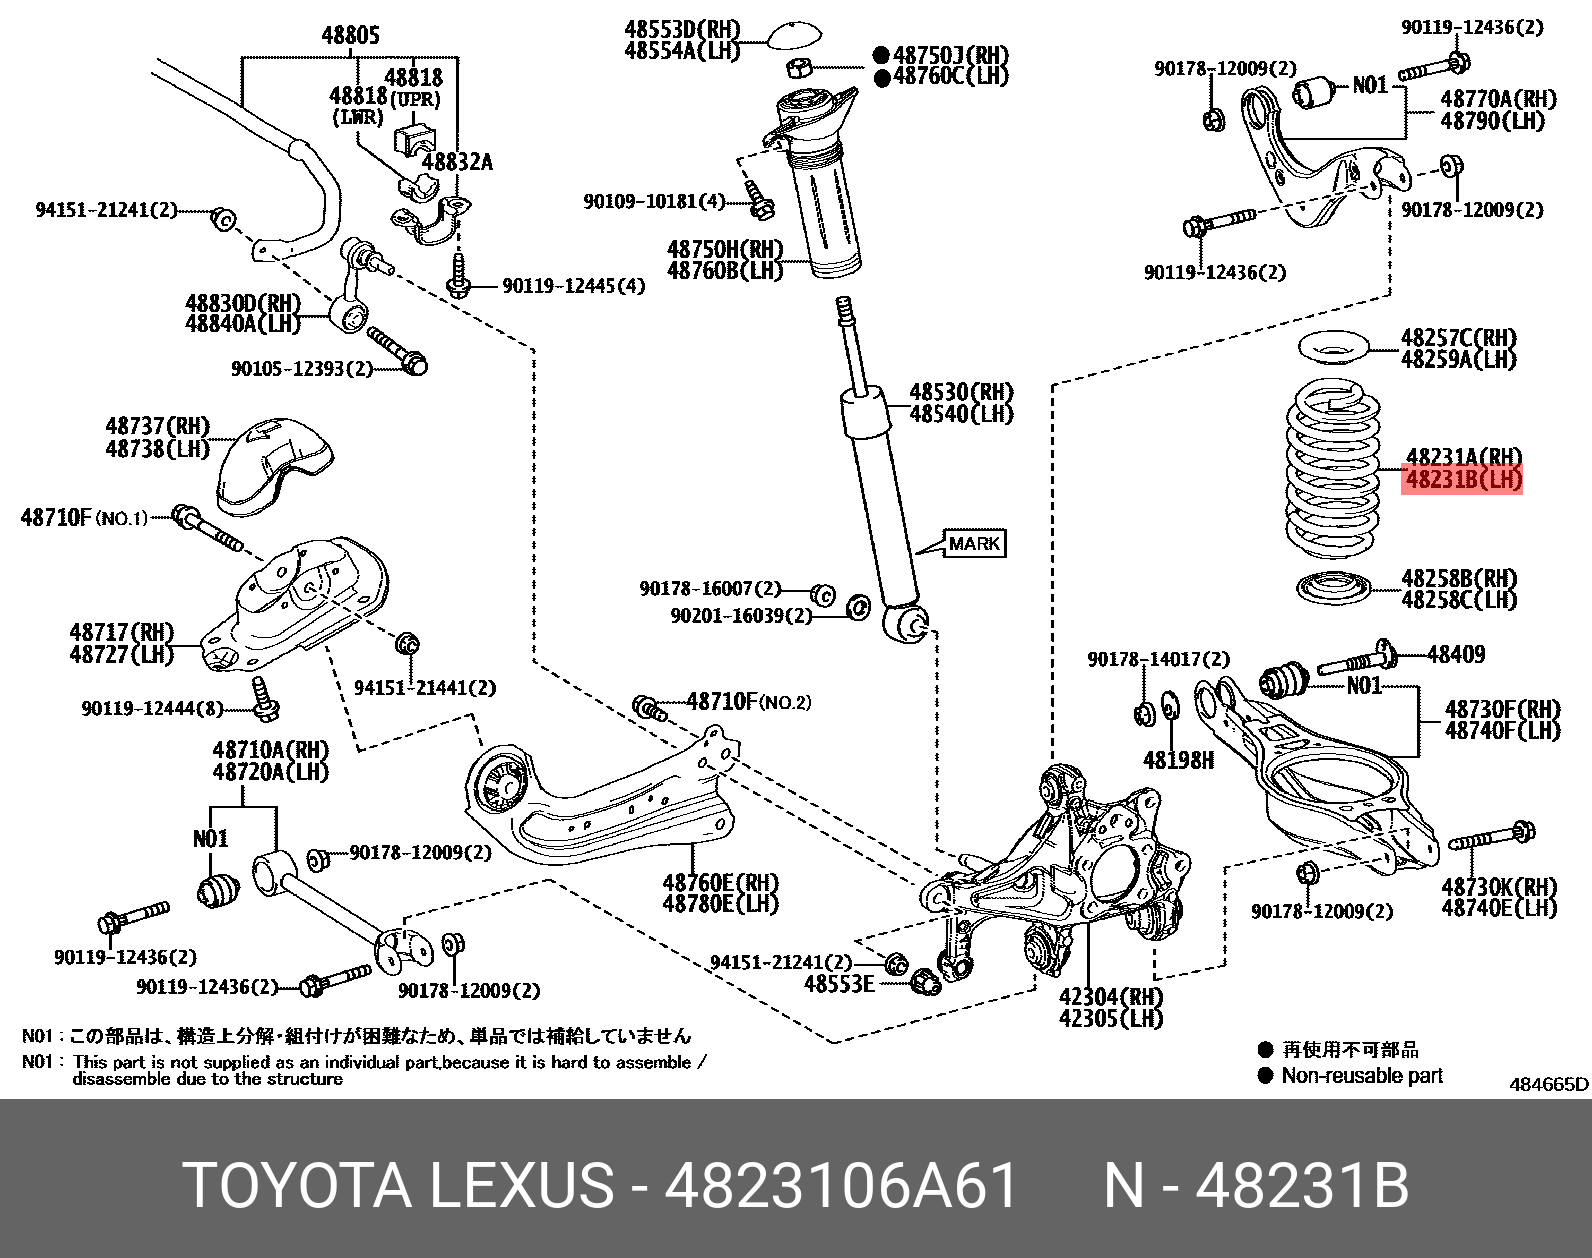 Пружина подвески задней левая Camry xv70 (20-) - Toyota 4823106A61